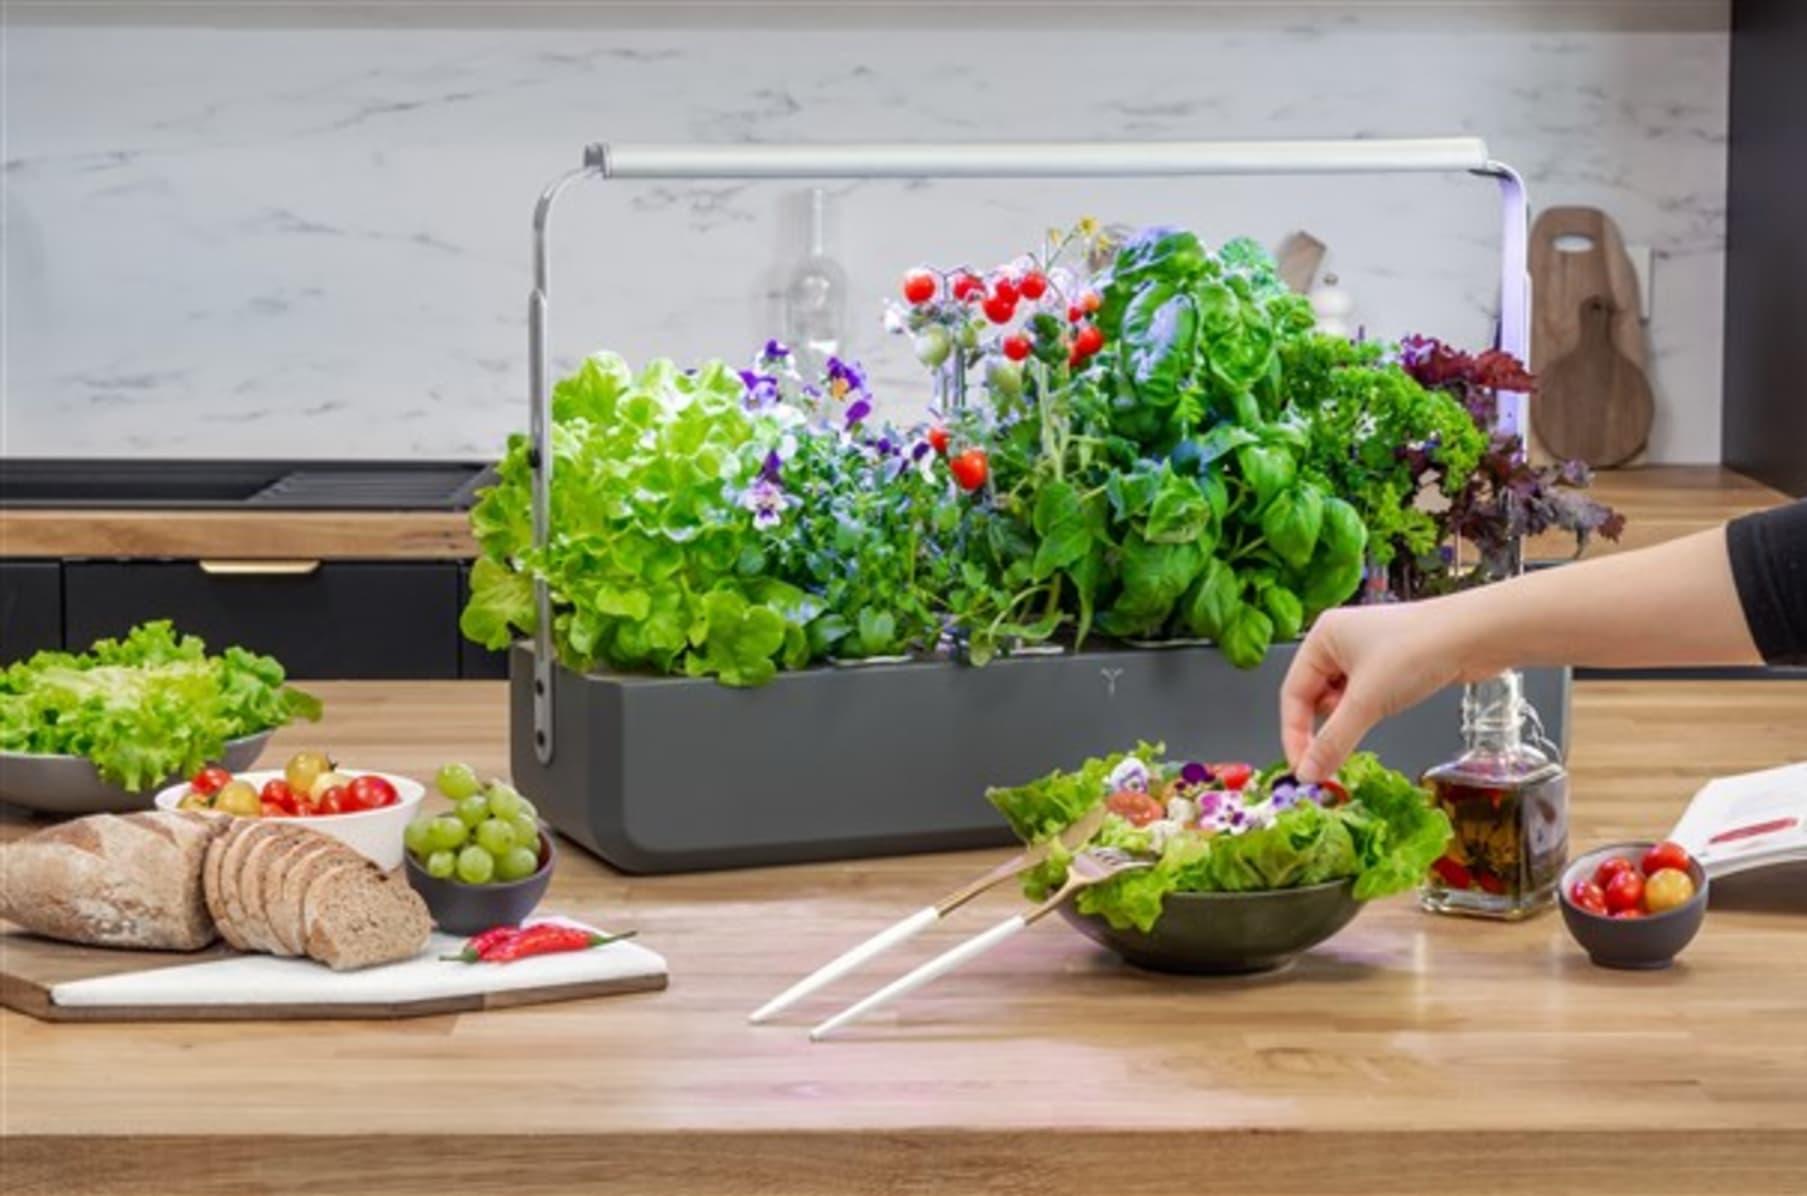 Smart Veritable Garden Lingot Seed Pod – Tomato